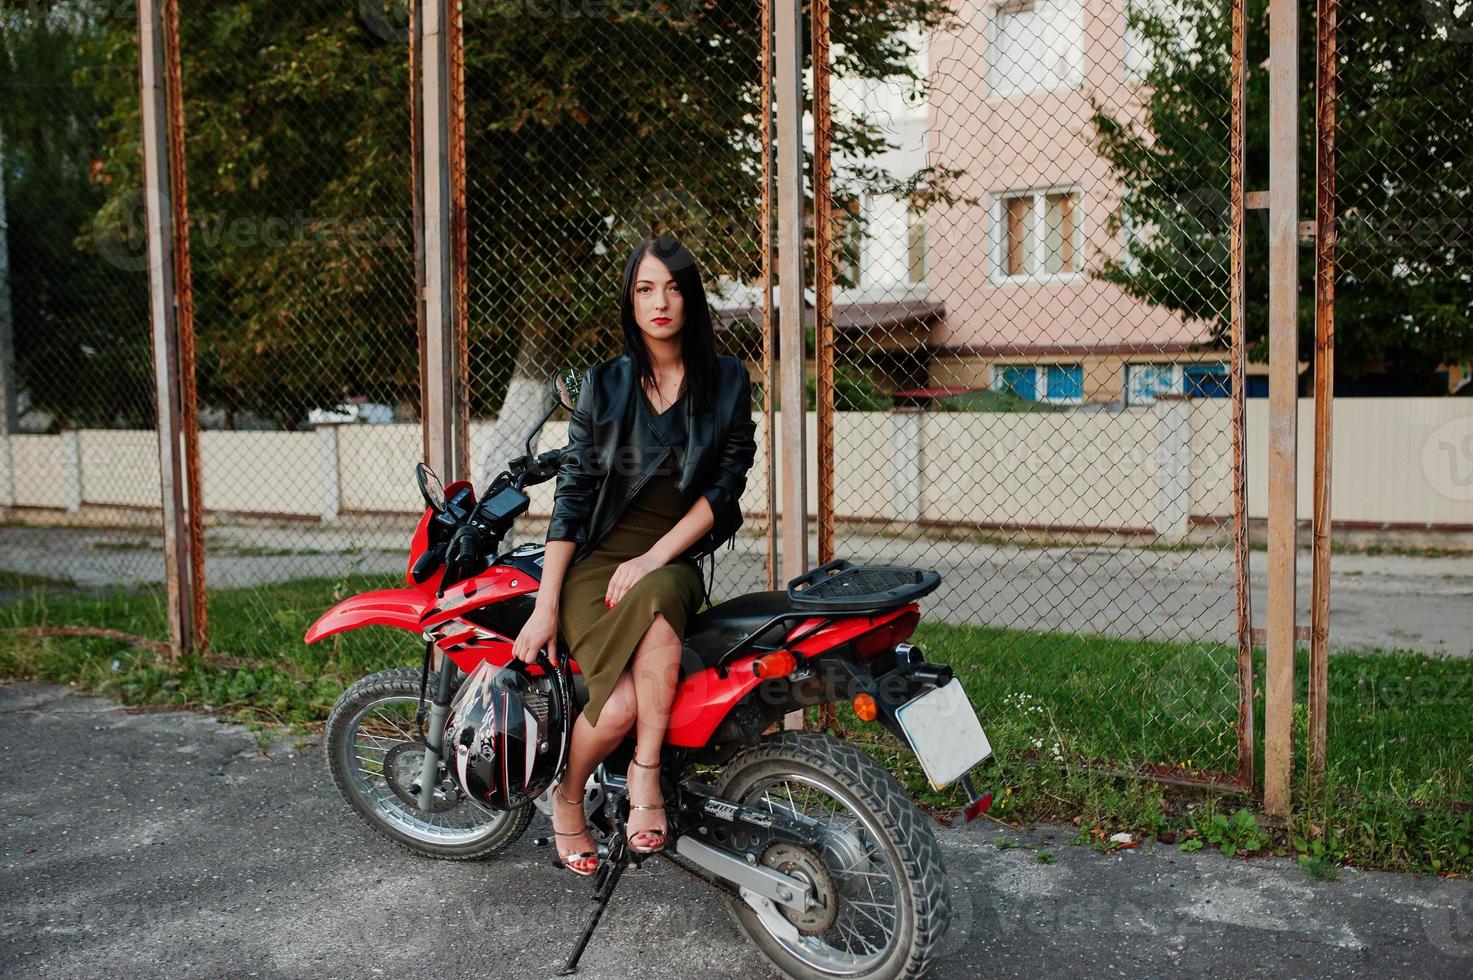 portrait d'une femme cool et géniale en robe et veste en cuir noir assise sur une moto rouge cool. photo